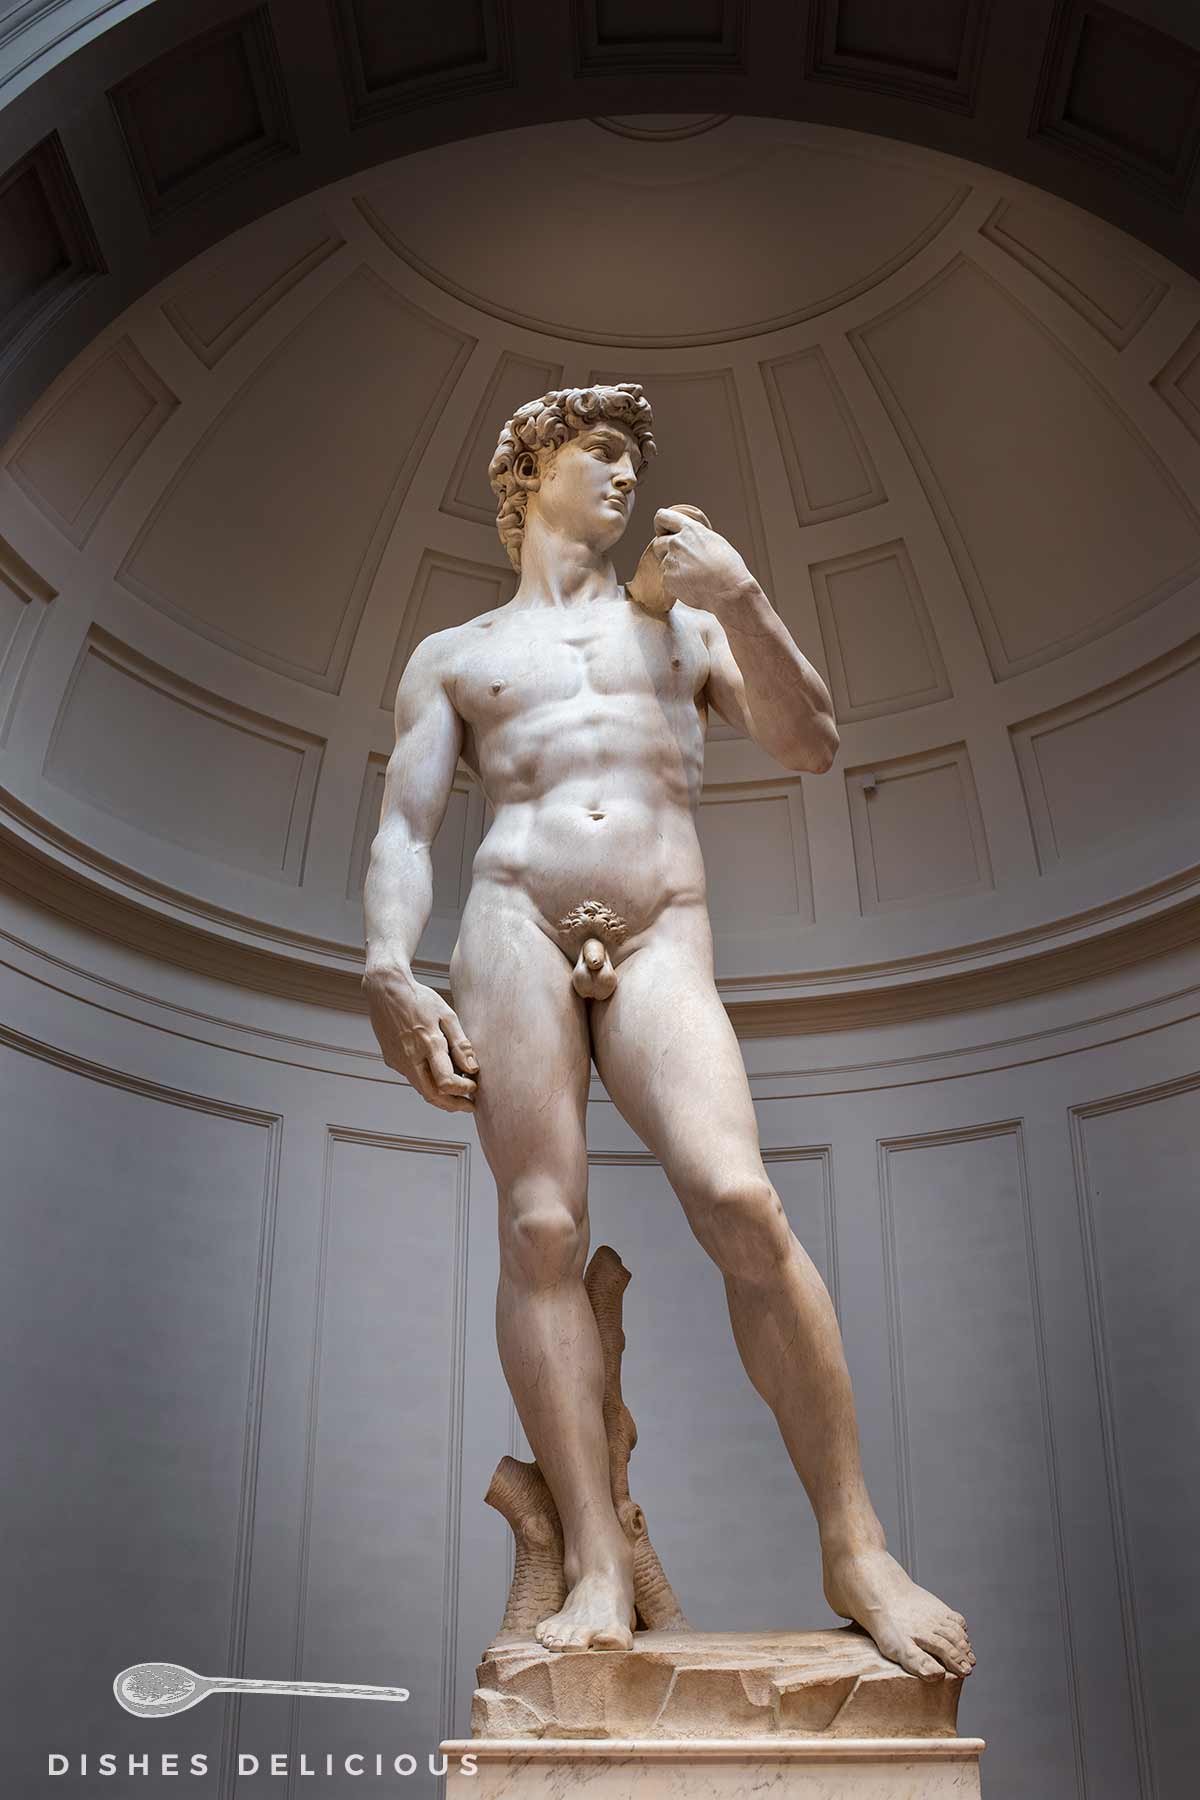 David-Statue von Michelangelo - eine der bekanntesten Sehenswürdigkeiten von Florenz.